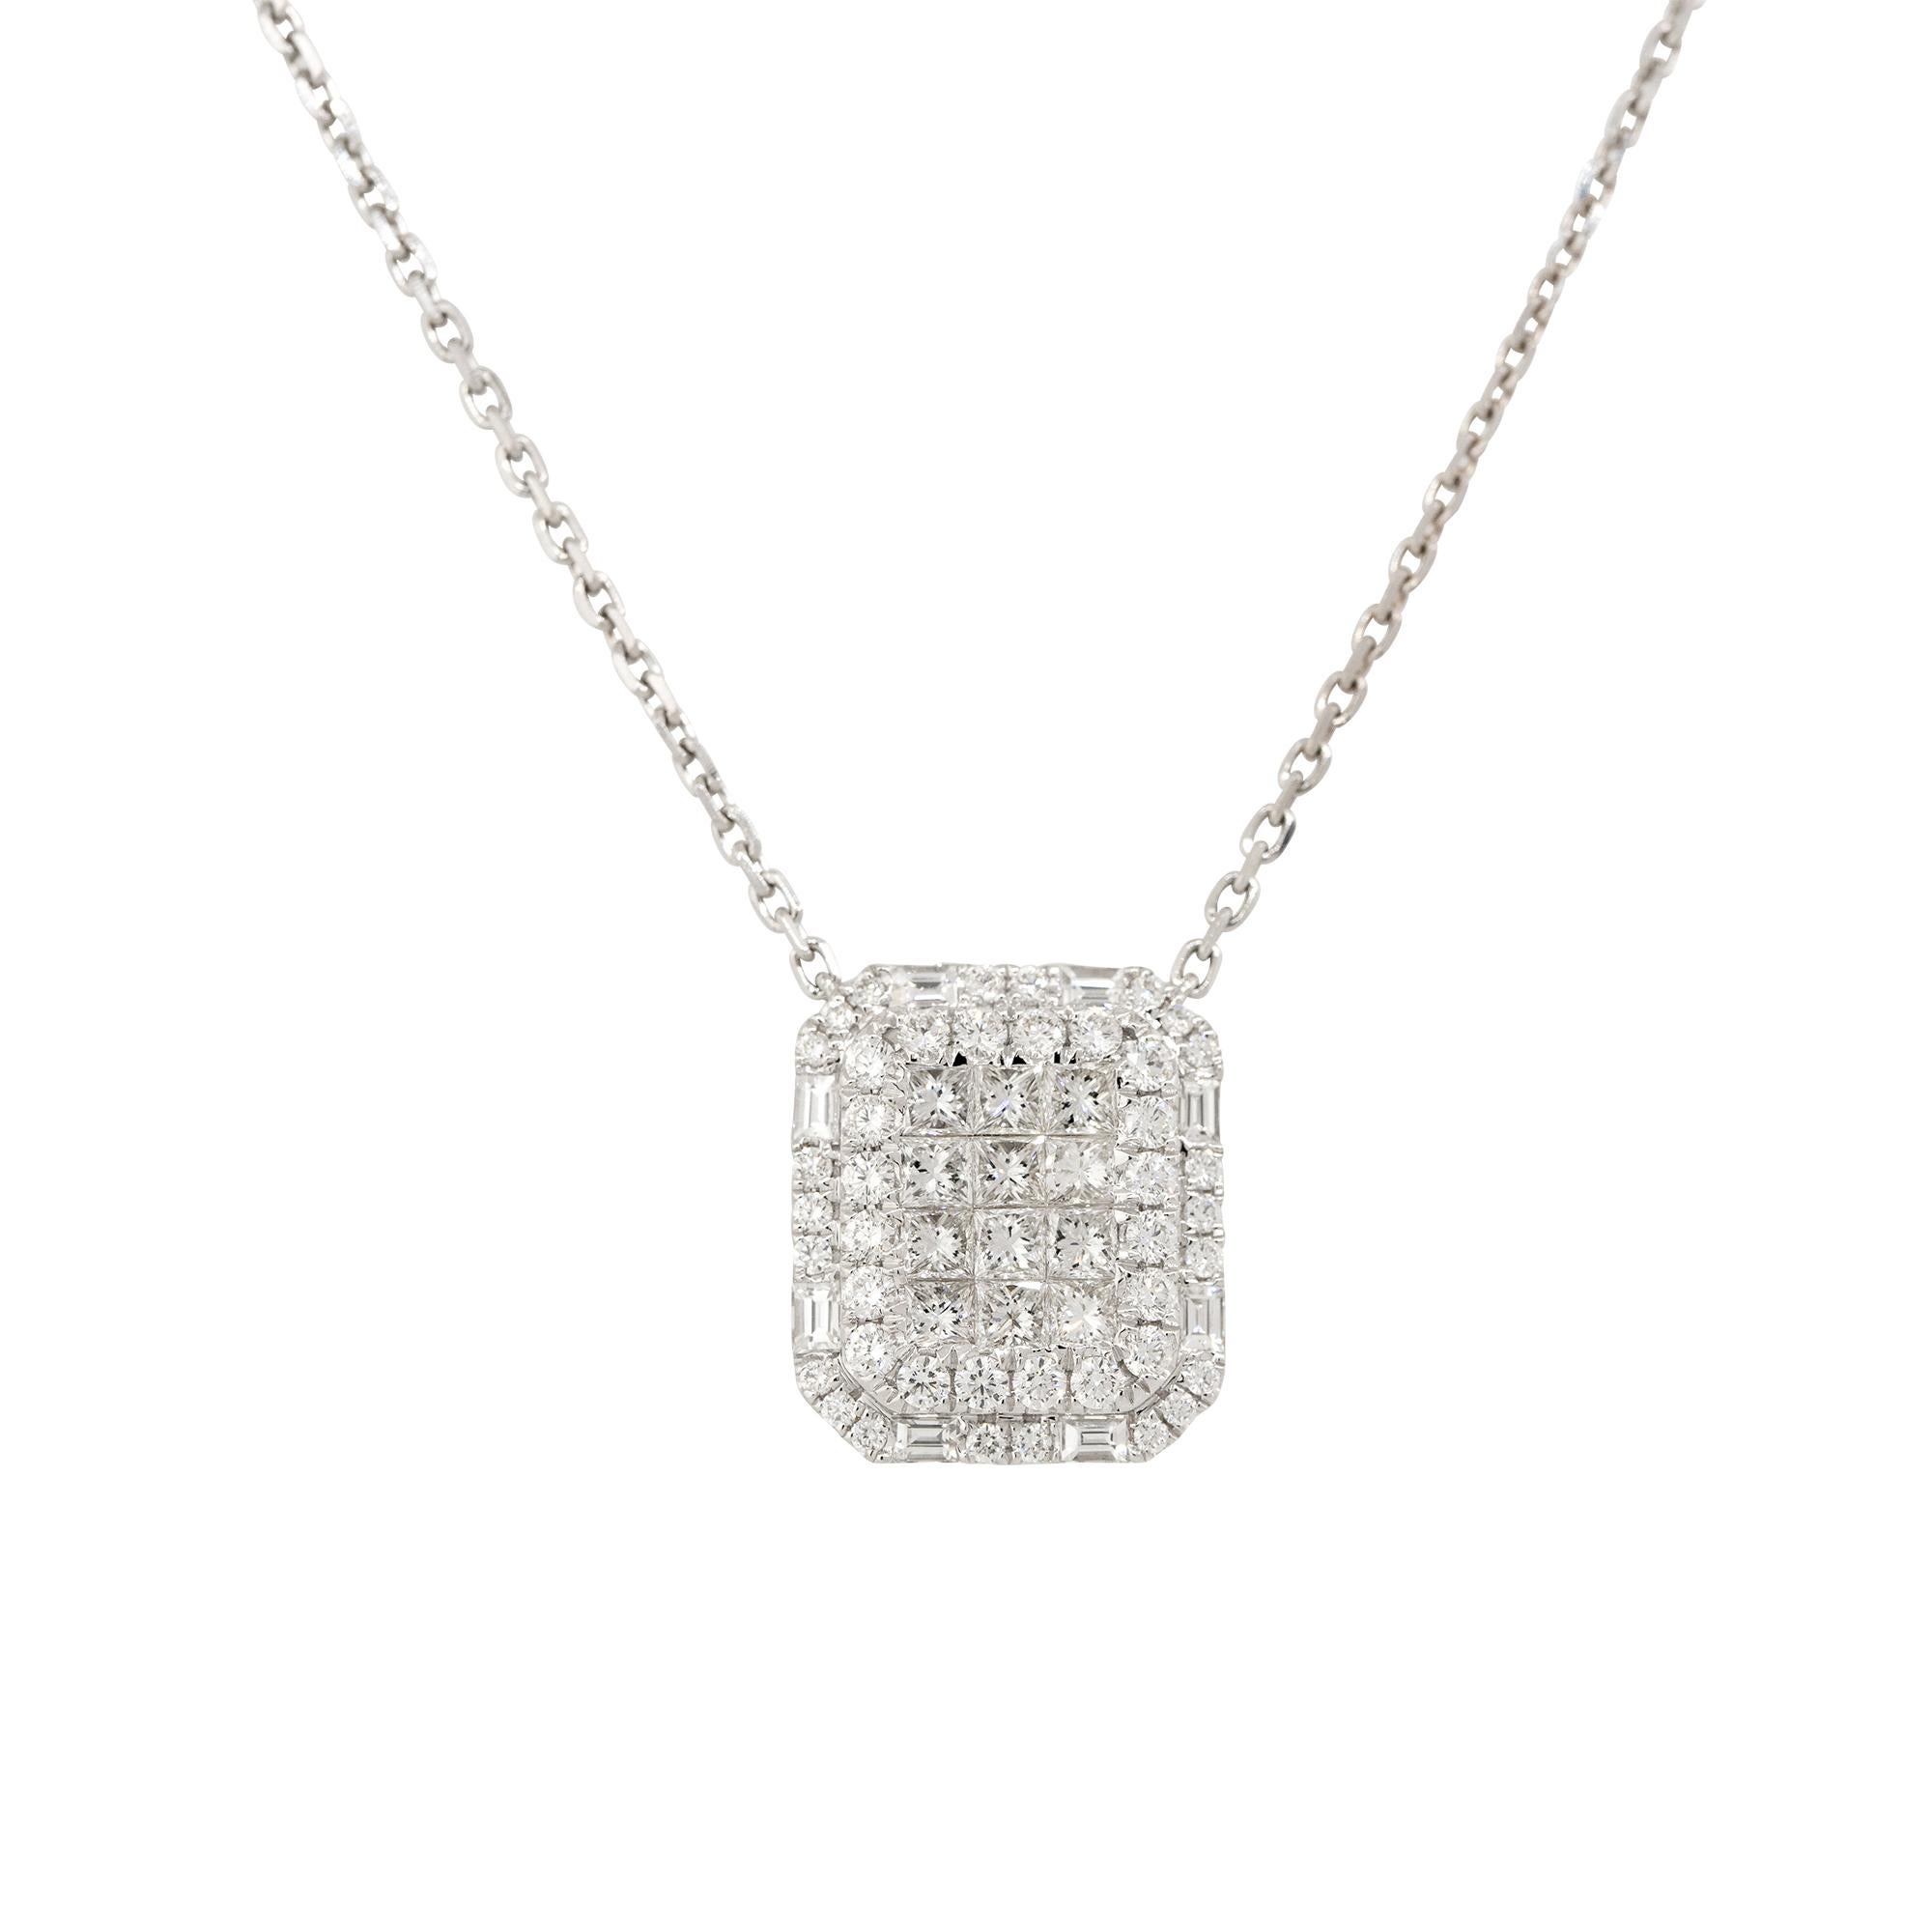 Collier de forme rectangulaire en or blanc 18k avec 2,43ctw de diamants en pavé
MATERIAL : Or blanc 18k
Détails des diamants : Il y a environ 2,43 carats de diamants en serti invisible. Au centre du pendentif, des diamants de taille princesse sont